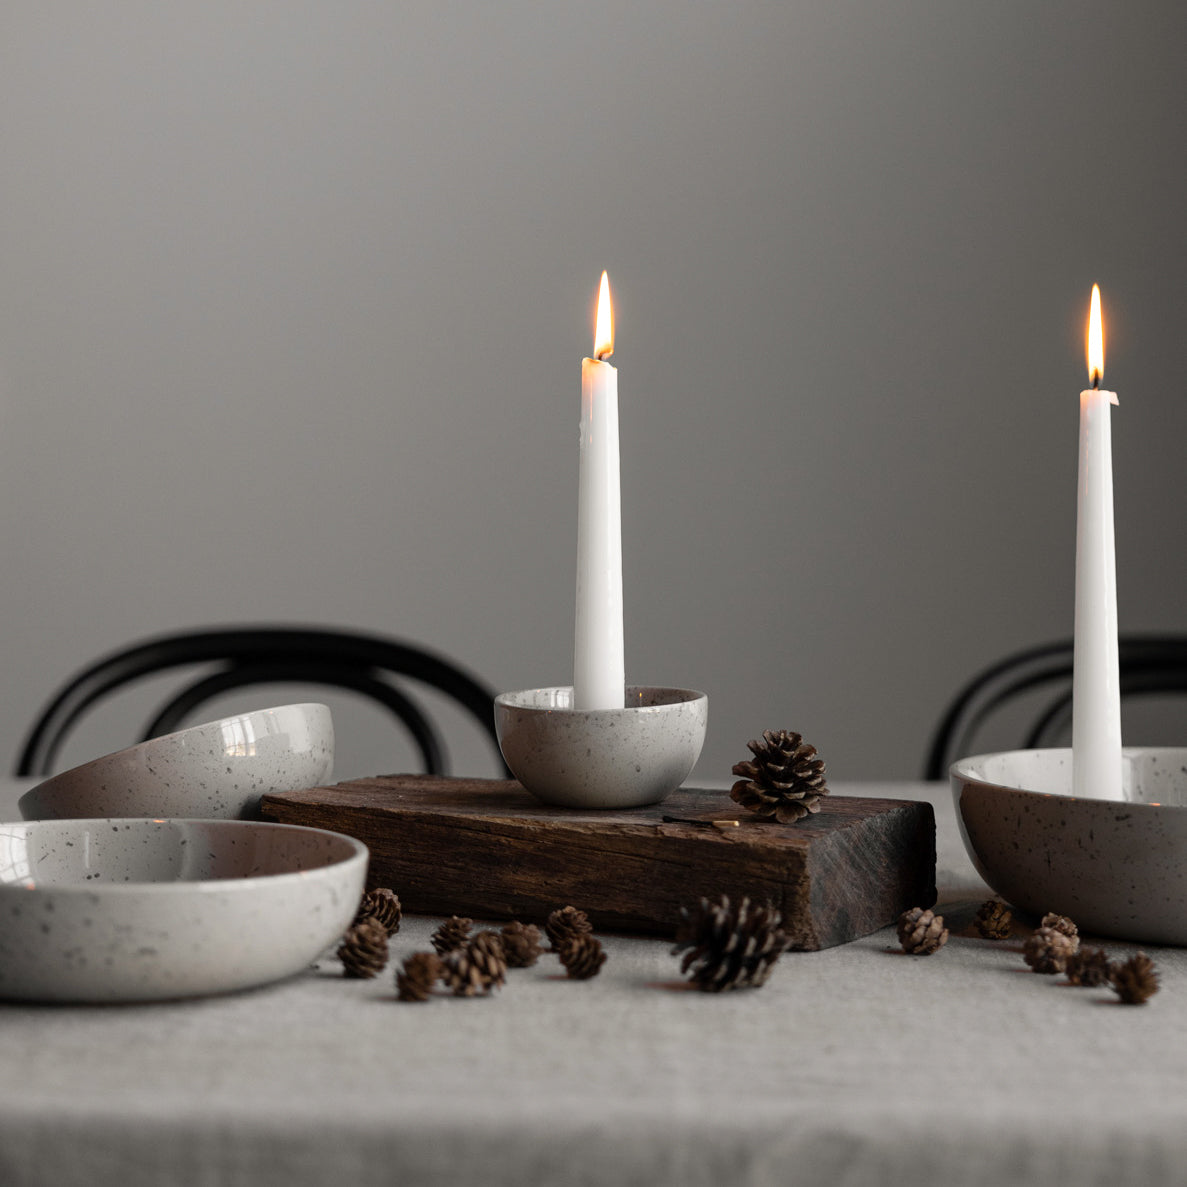 Kerzenhalter in skandinavischen Designs sorgen für ein gemütliches Zuhause. 